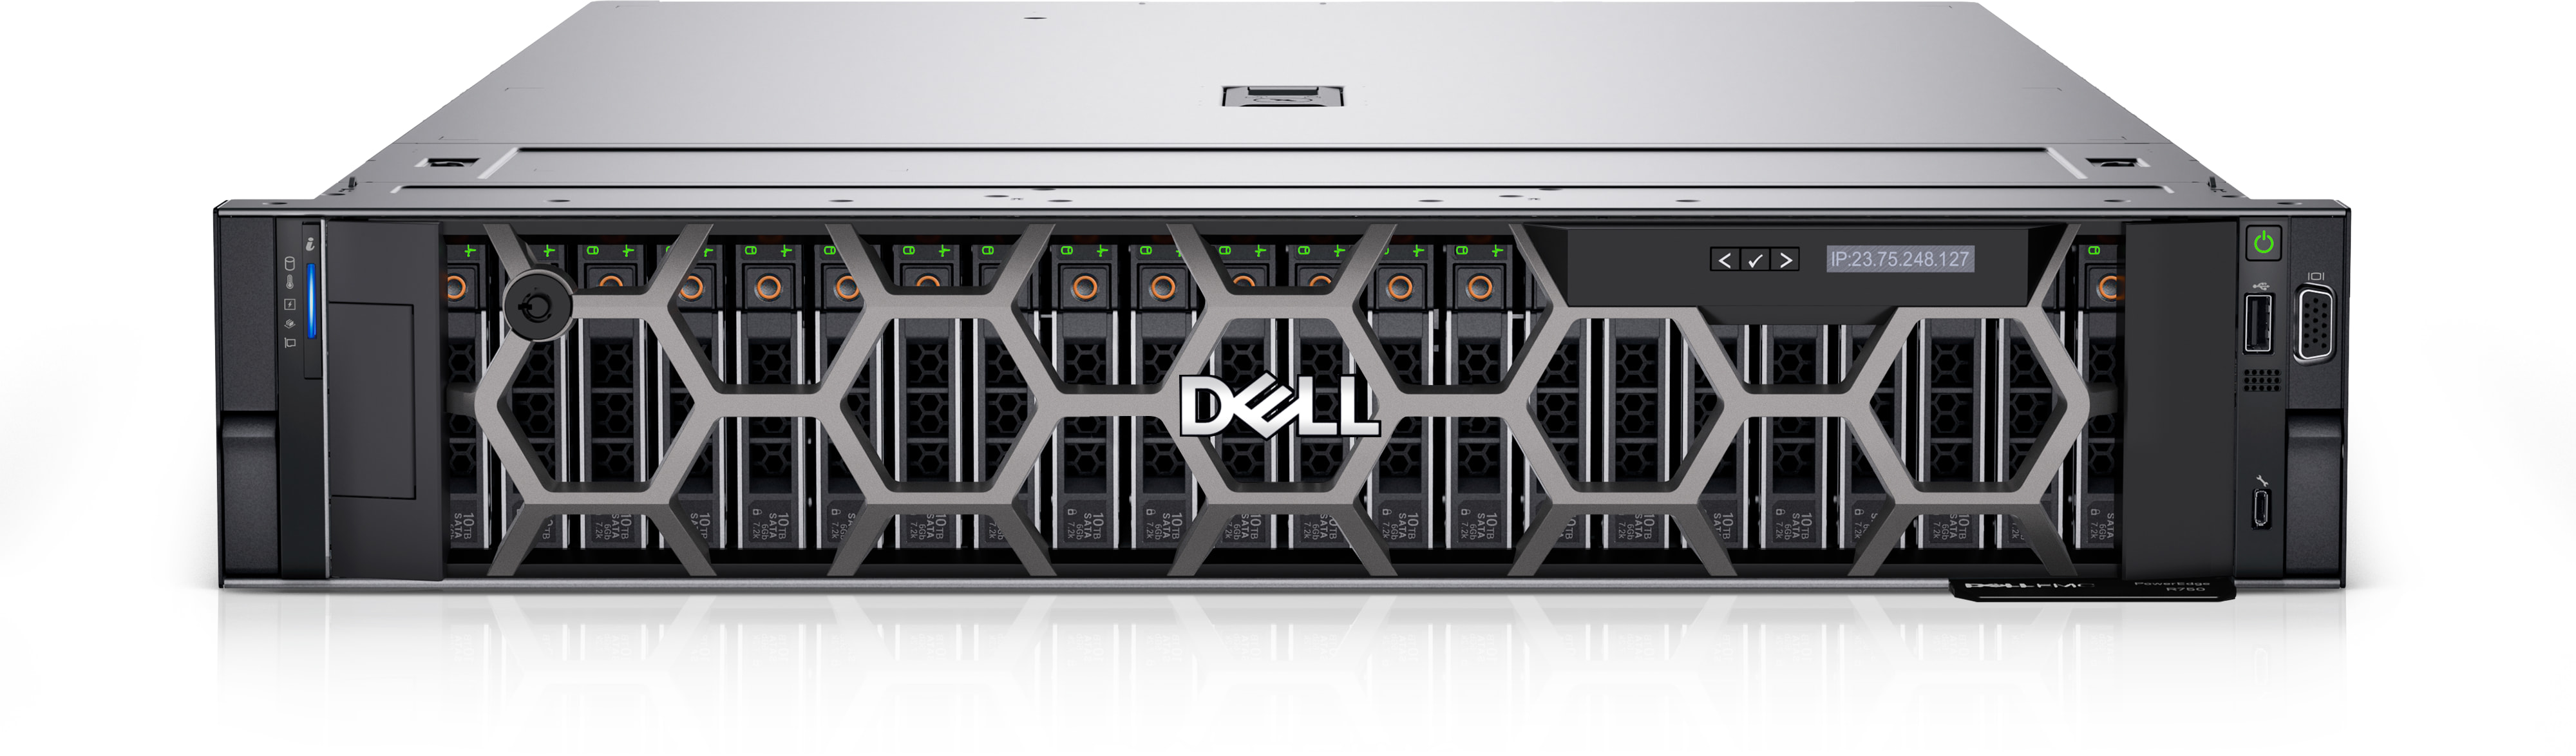 Servidor rack Dell EMC PowerEdge R750 | Creativo computación